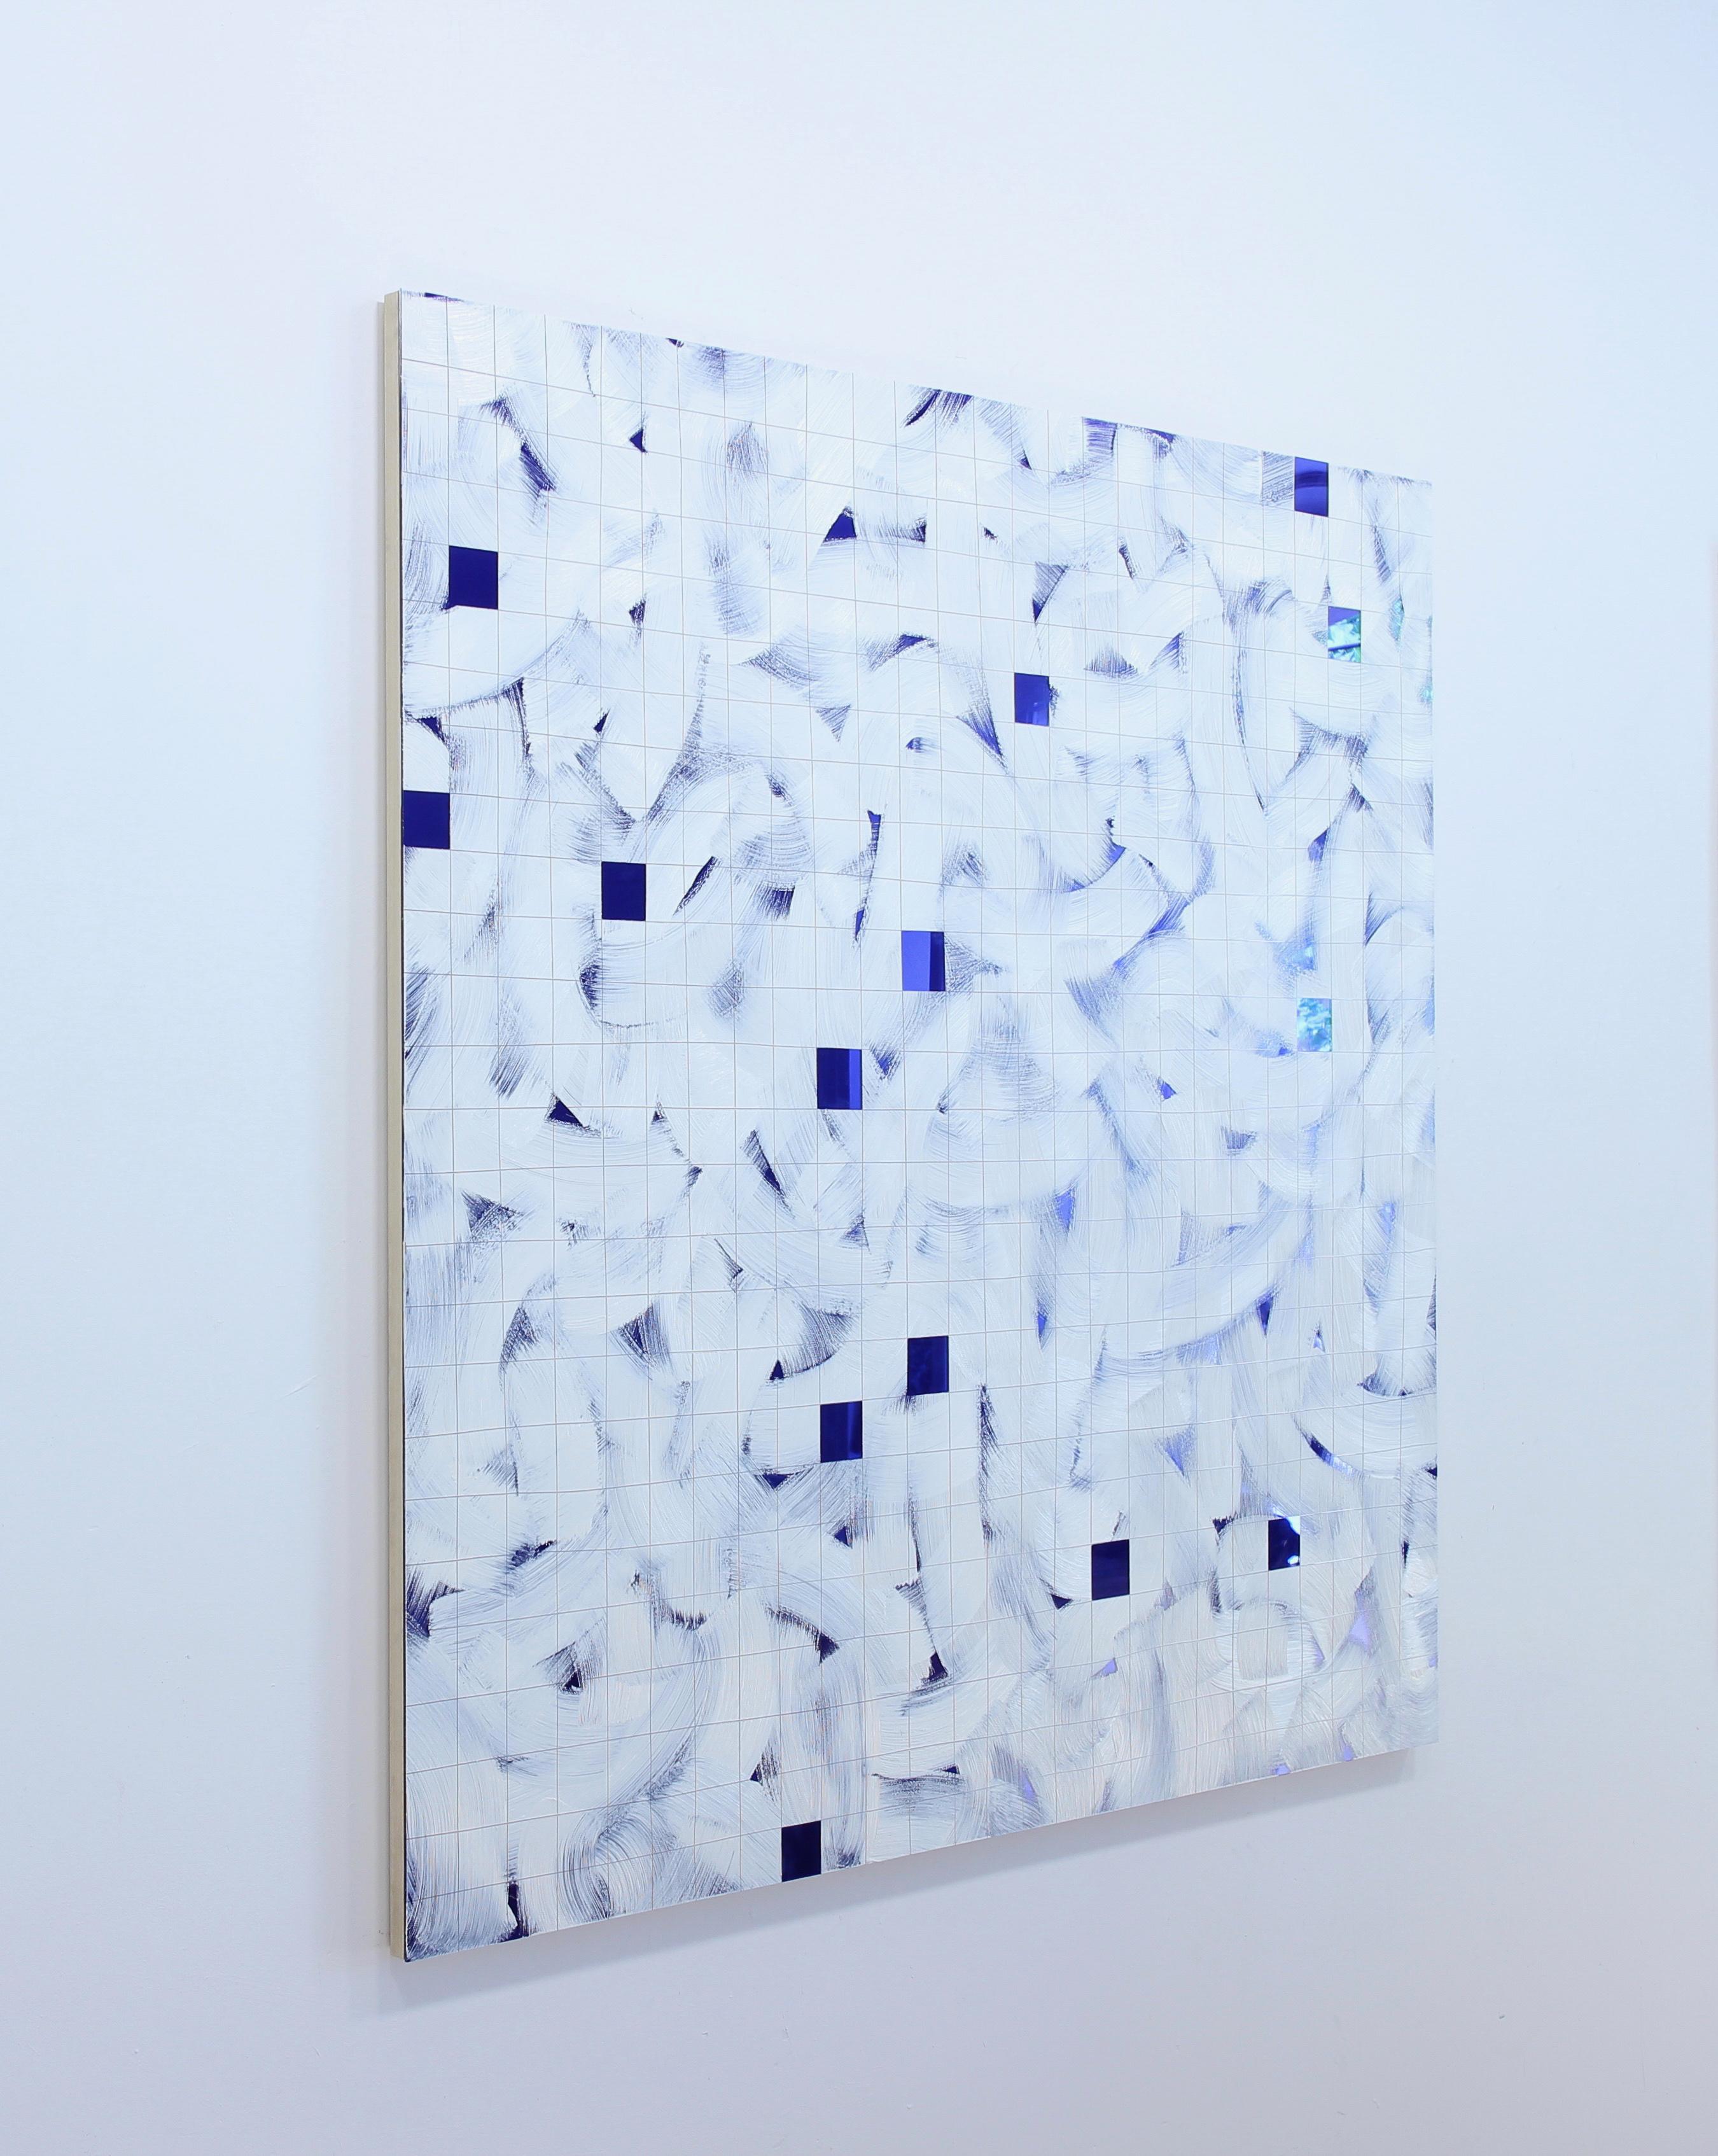 Tiefblau (Abstraktes Gemälde)

Ölfarbe auf reflektierendem gegossenem Acryl - Ungerahmt.

Dieses Werk ist Teil einer Serie von Gemälden mit dem Titel 